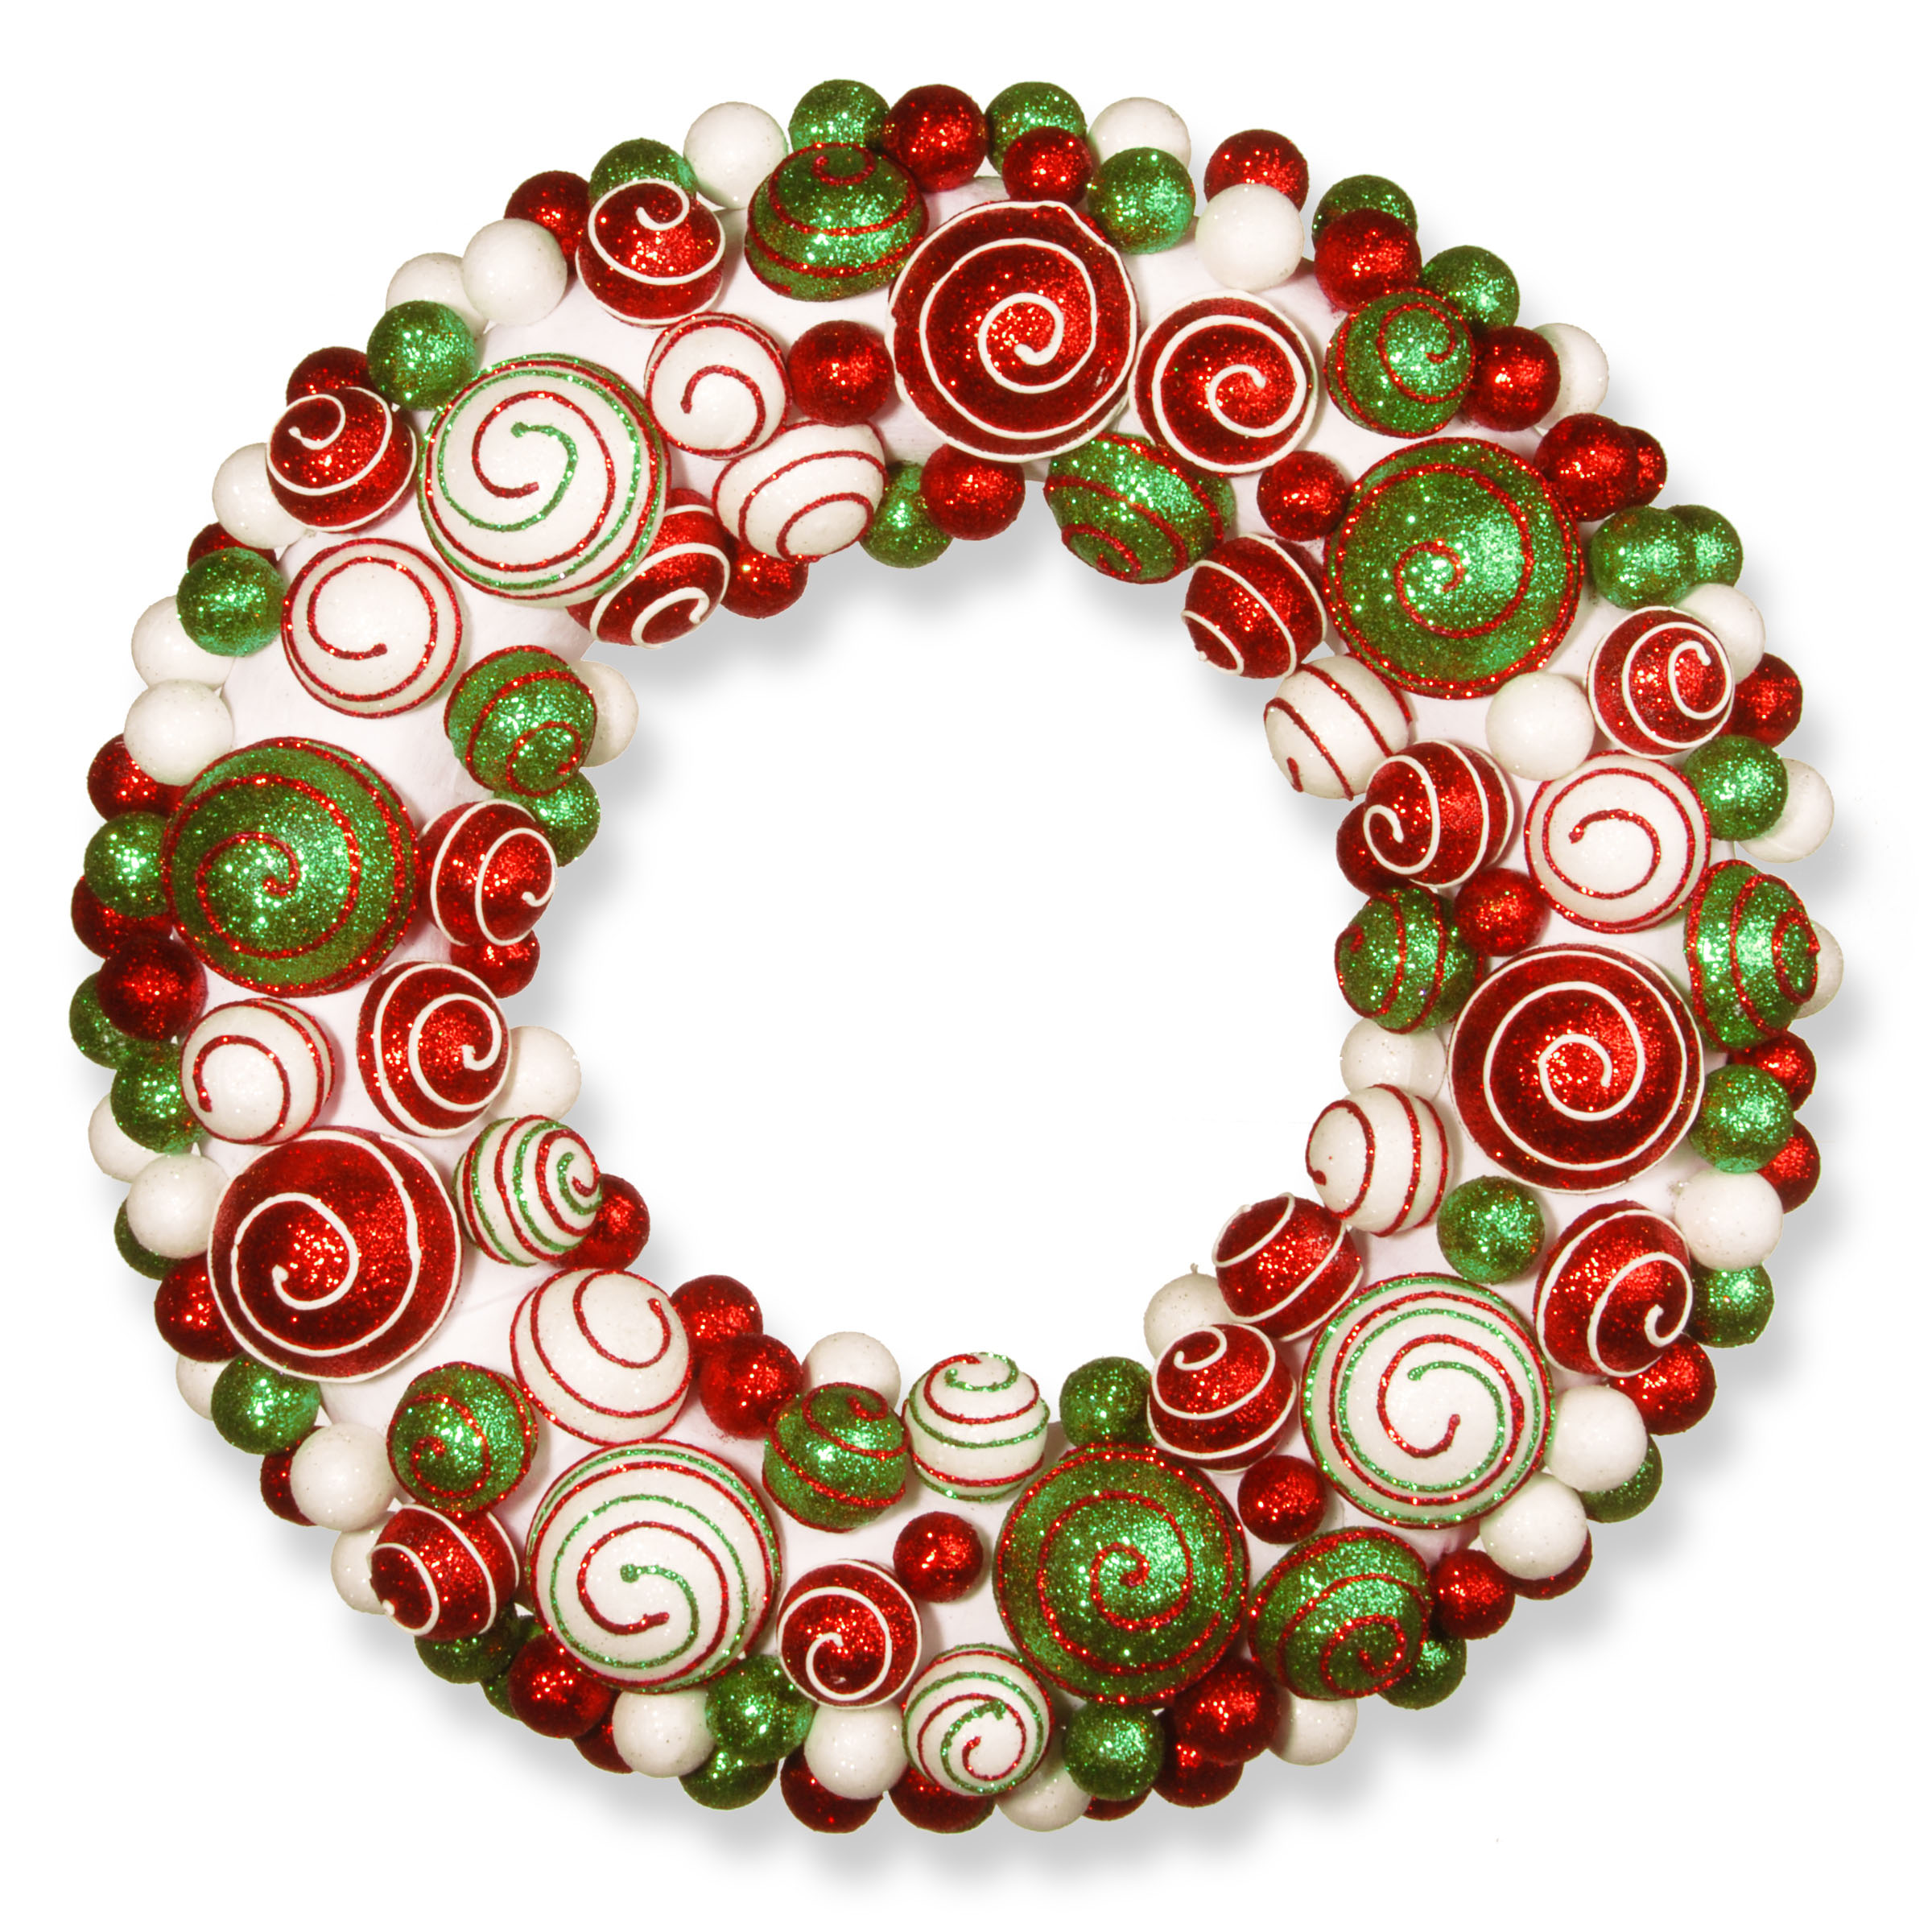 20 Inch Mixed Ornament Wreath: Unlit